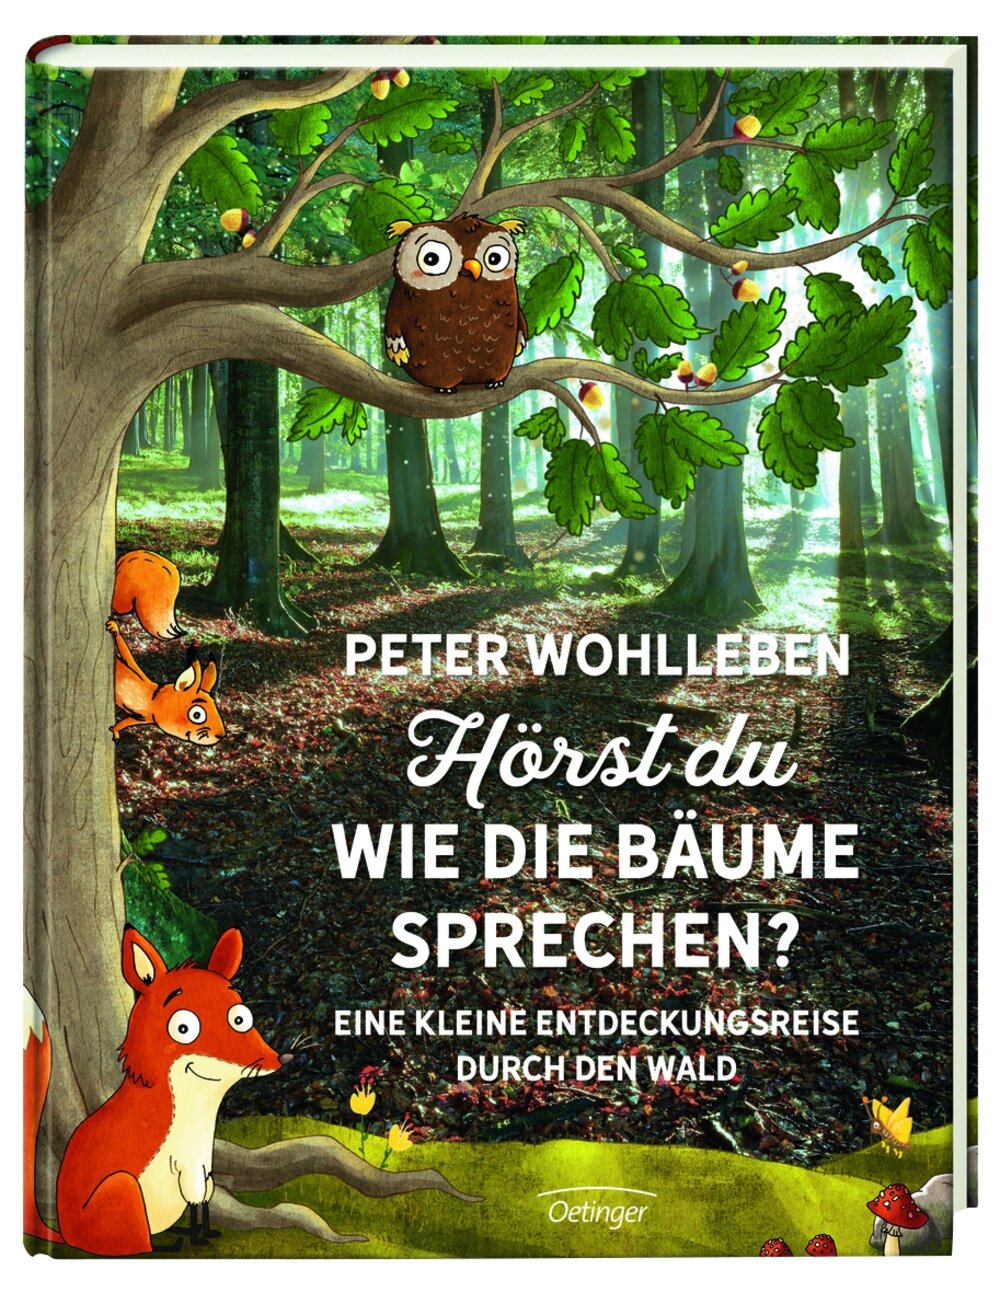 „Hörst du wie die Bäume sprechen?“ – Peter Wohlleben